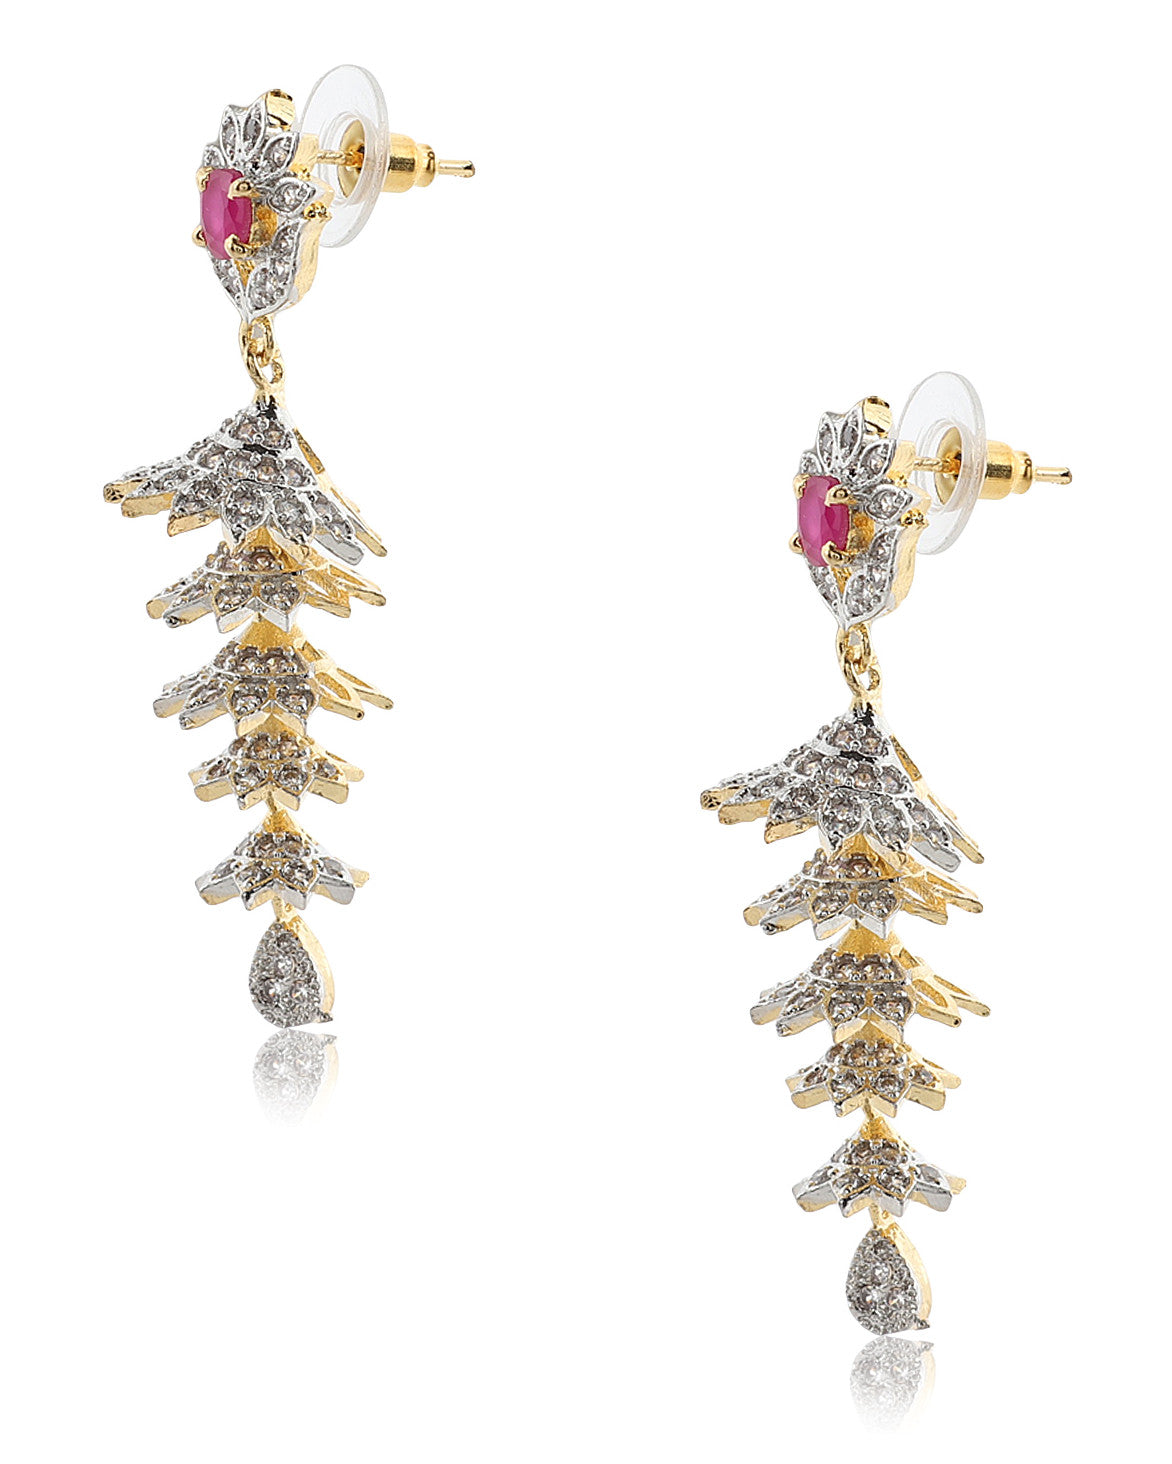 Mekkna Designed Gold Plated Earrings for Women | Buy This Jewellery Online from Mekkna